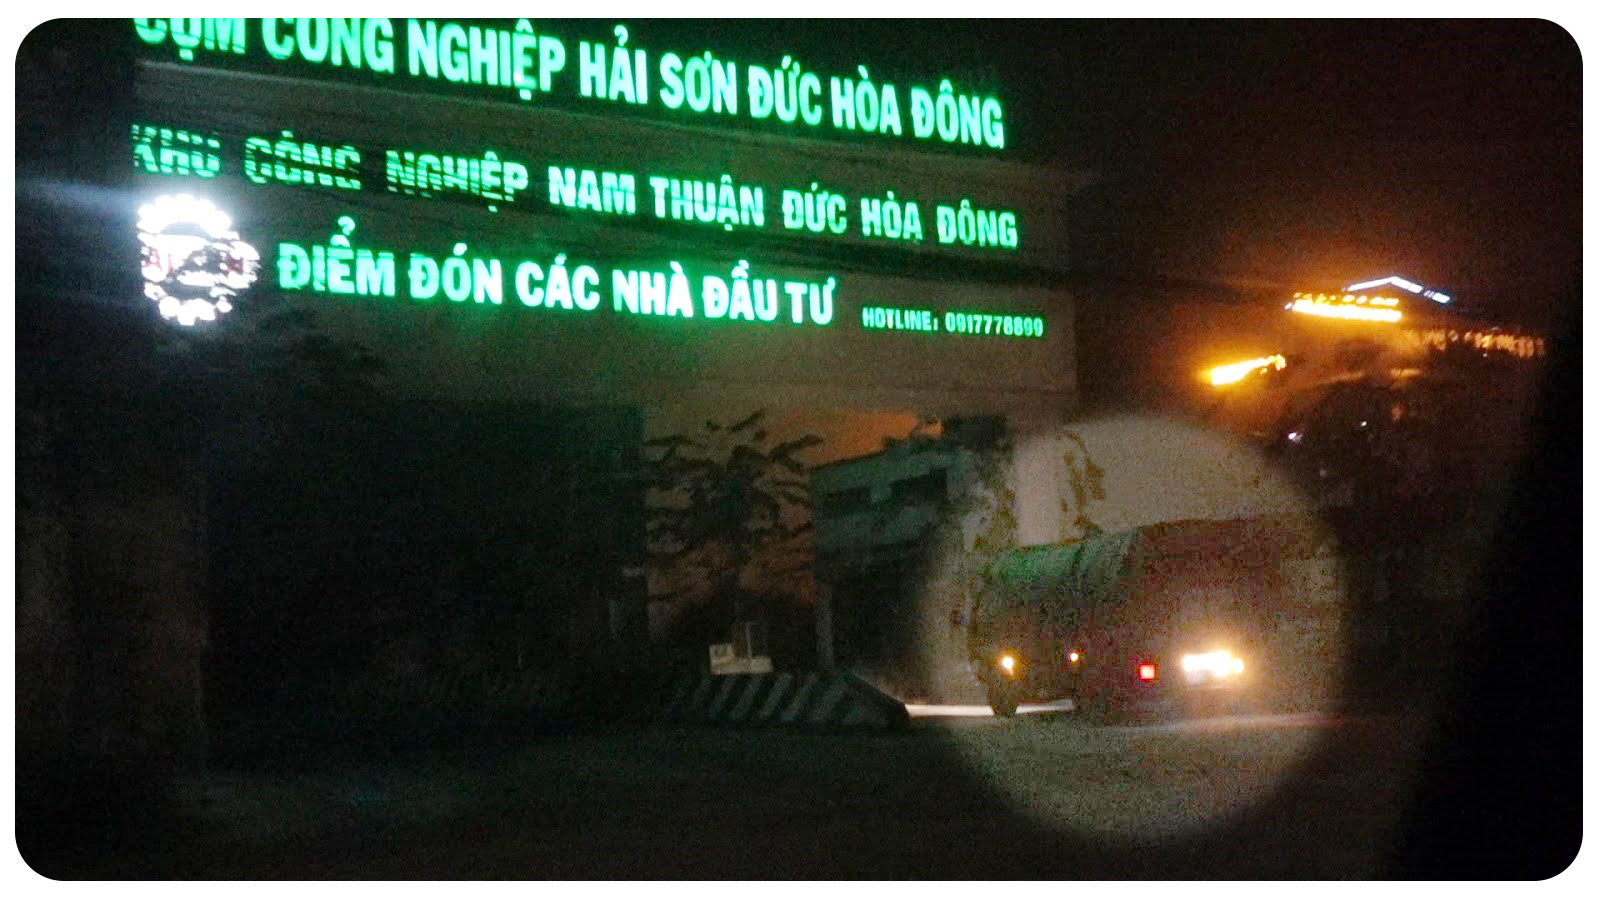 Chiếc xe tải chở rác lậu sau một phi vụ thành công trở lại Khu công nghiệp Hải Sơn tiếp tục những chuyến đi “đi đêm”